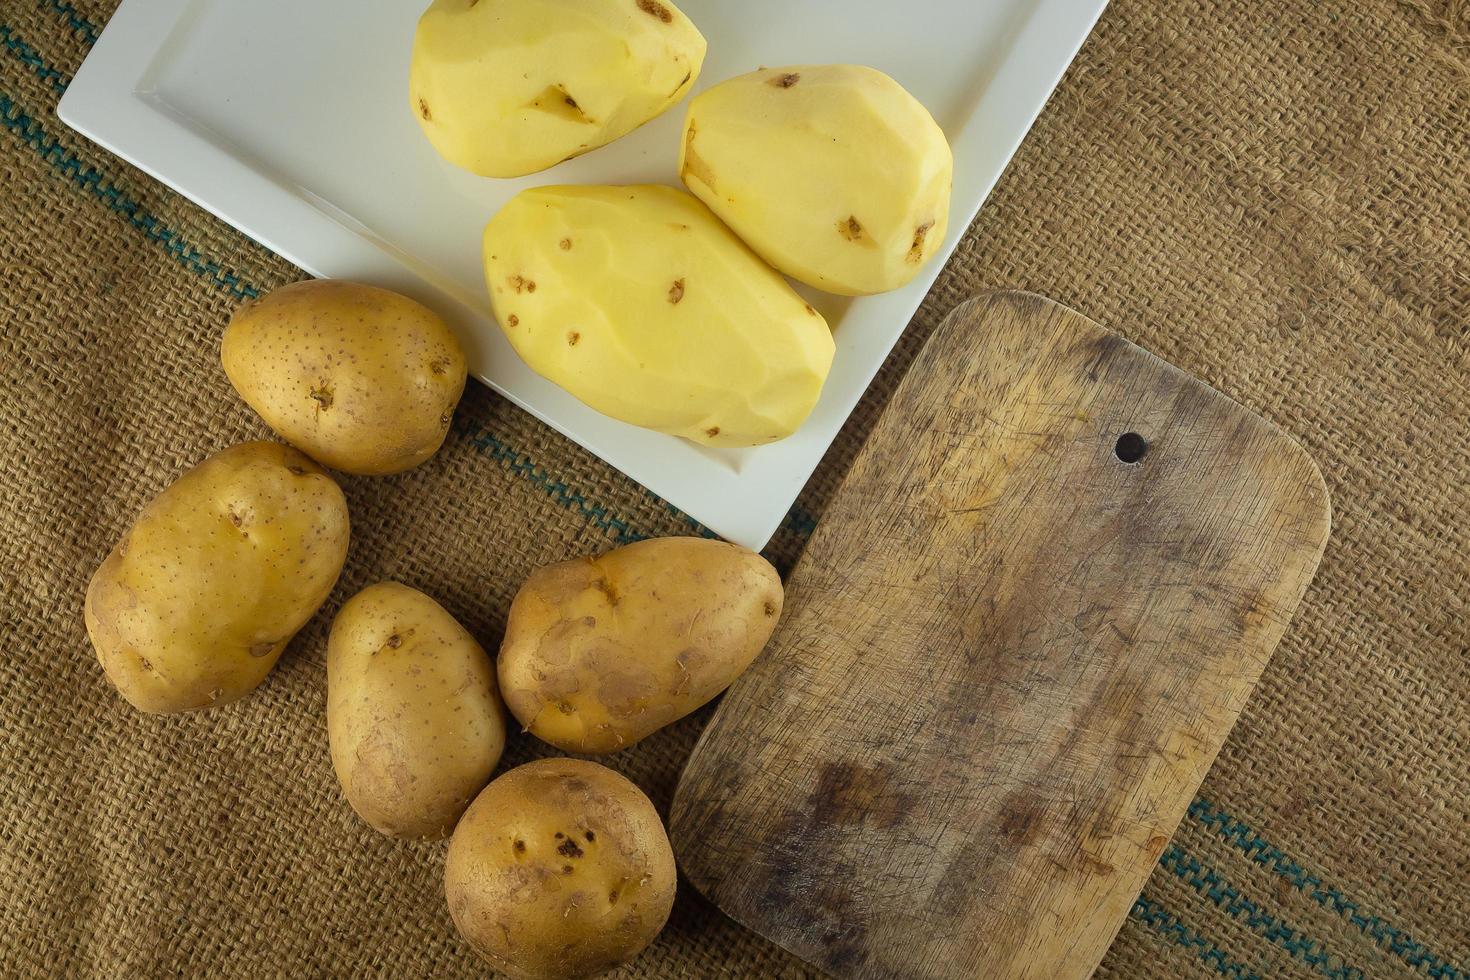 preparación de patatas para cocinar comida sana. foto